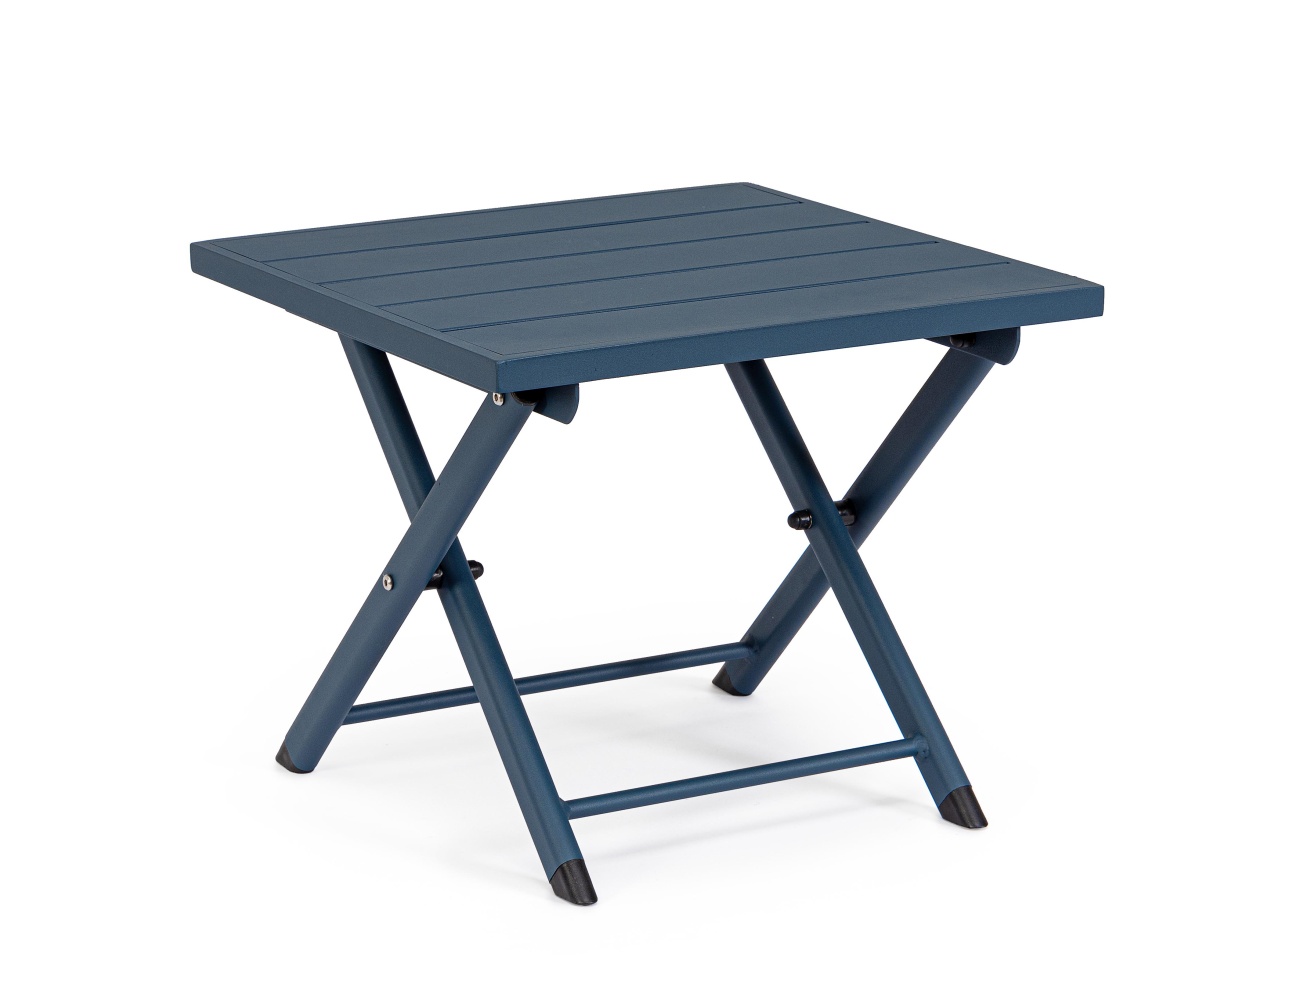 Der Gartenbeistelltisch Taylor überzeugt mit seinem modernen Design. Gefertigt wurde er aus Aluminium, welches einen blauen Farbton besitzt. Das Gestell ist auch aus Aluminium. Der Tisch besitzt eine Größe von 44x43 cm. Der Tisch ist klappbar.